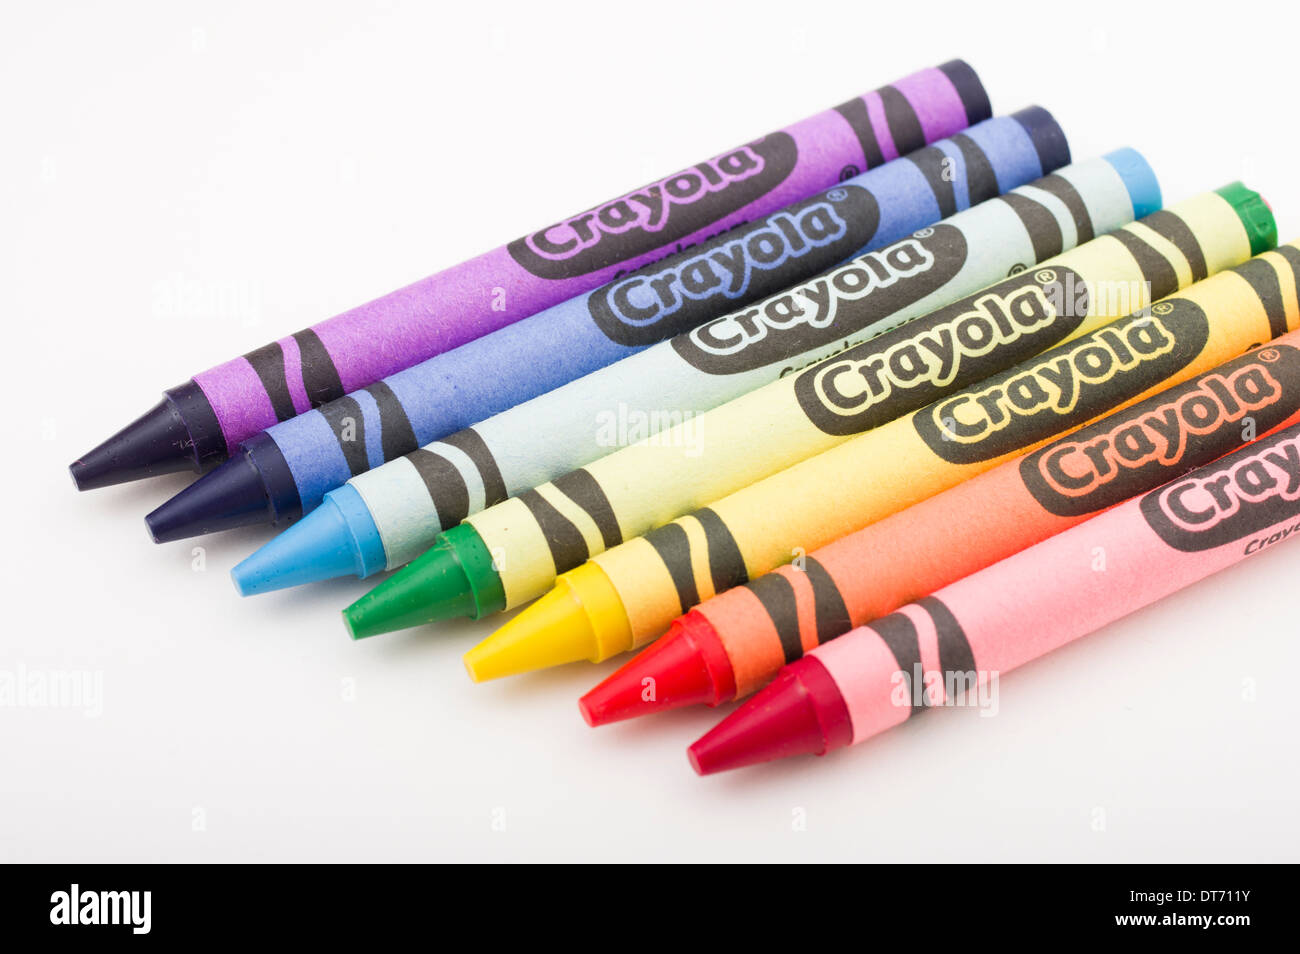 Crayola pastelli a cera fatta principalmente di petrolio di paraffina un iconico giocattolo per bambini è Foto Stock